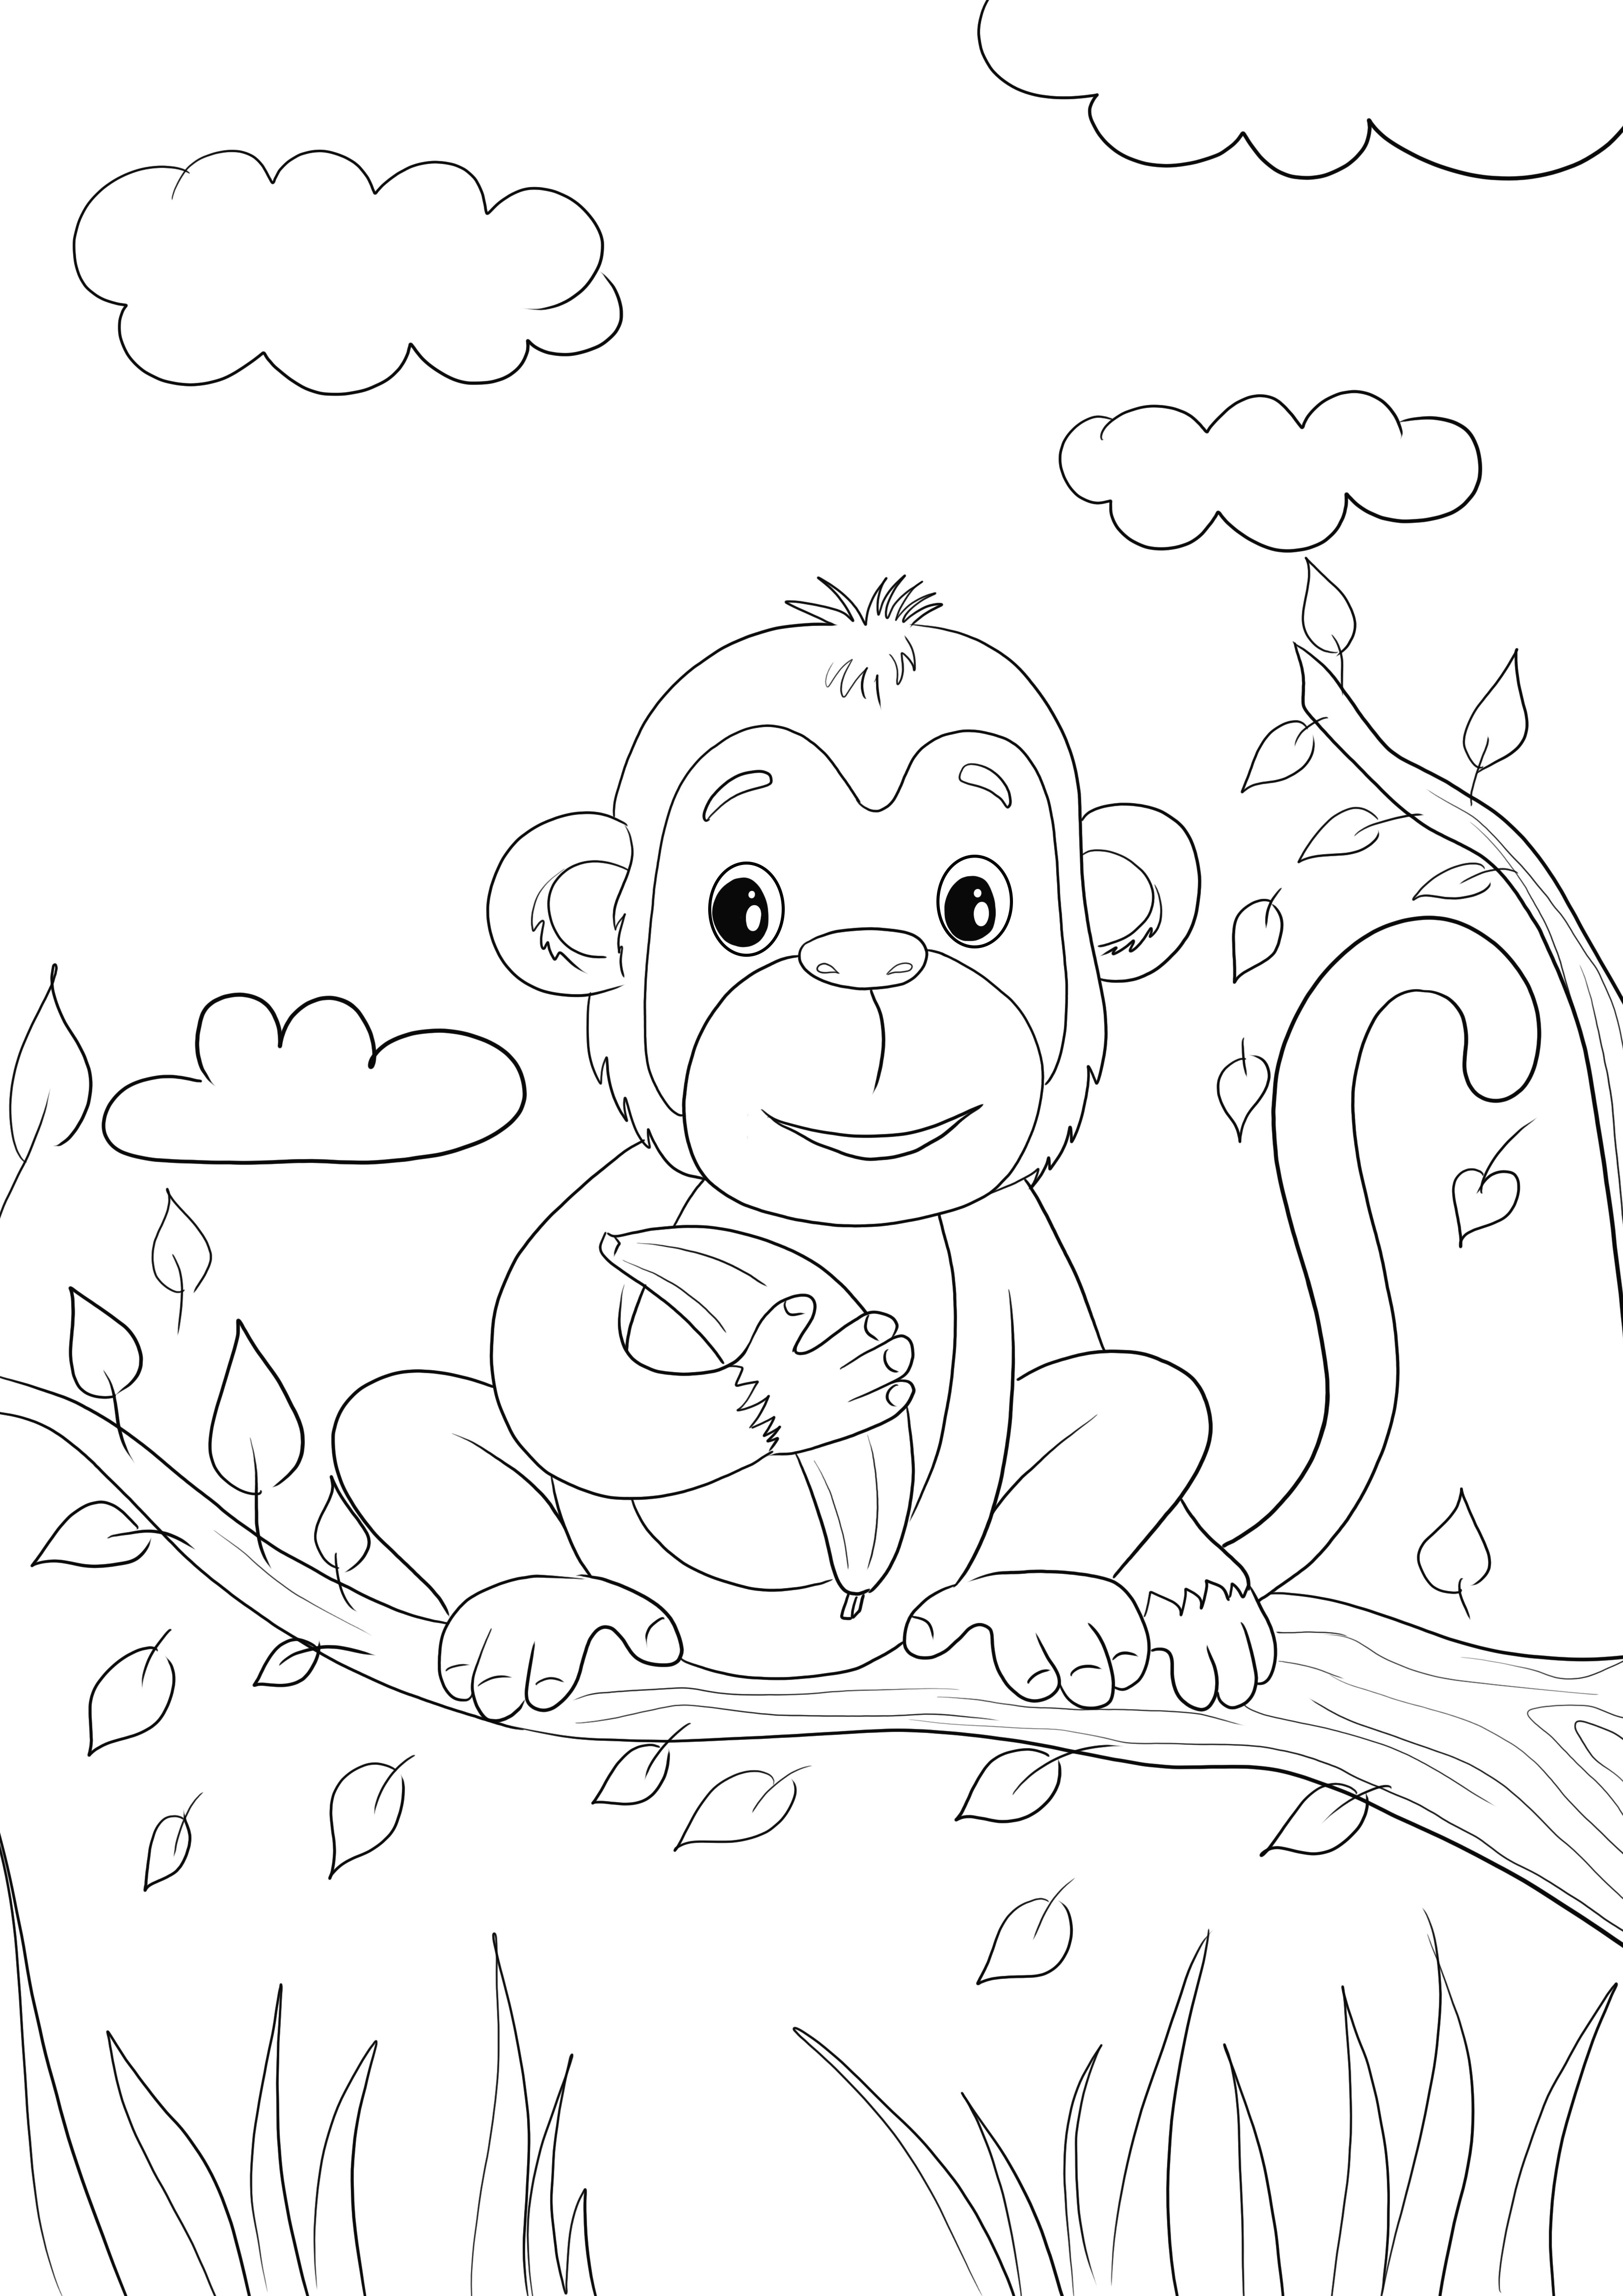 Hier ist ein süßes Affenbaby, das eine Banane zum Ausmalen hält, die Sie kostenlos ausdrucken oder für später speichern können